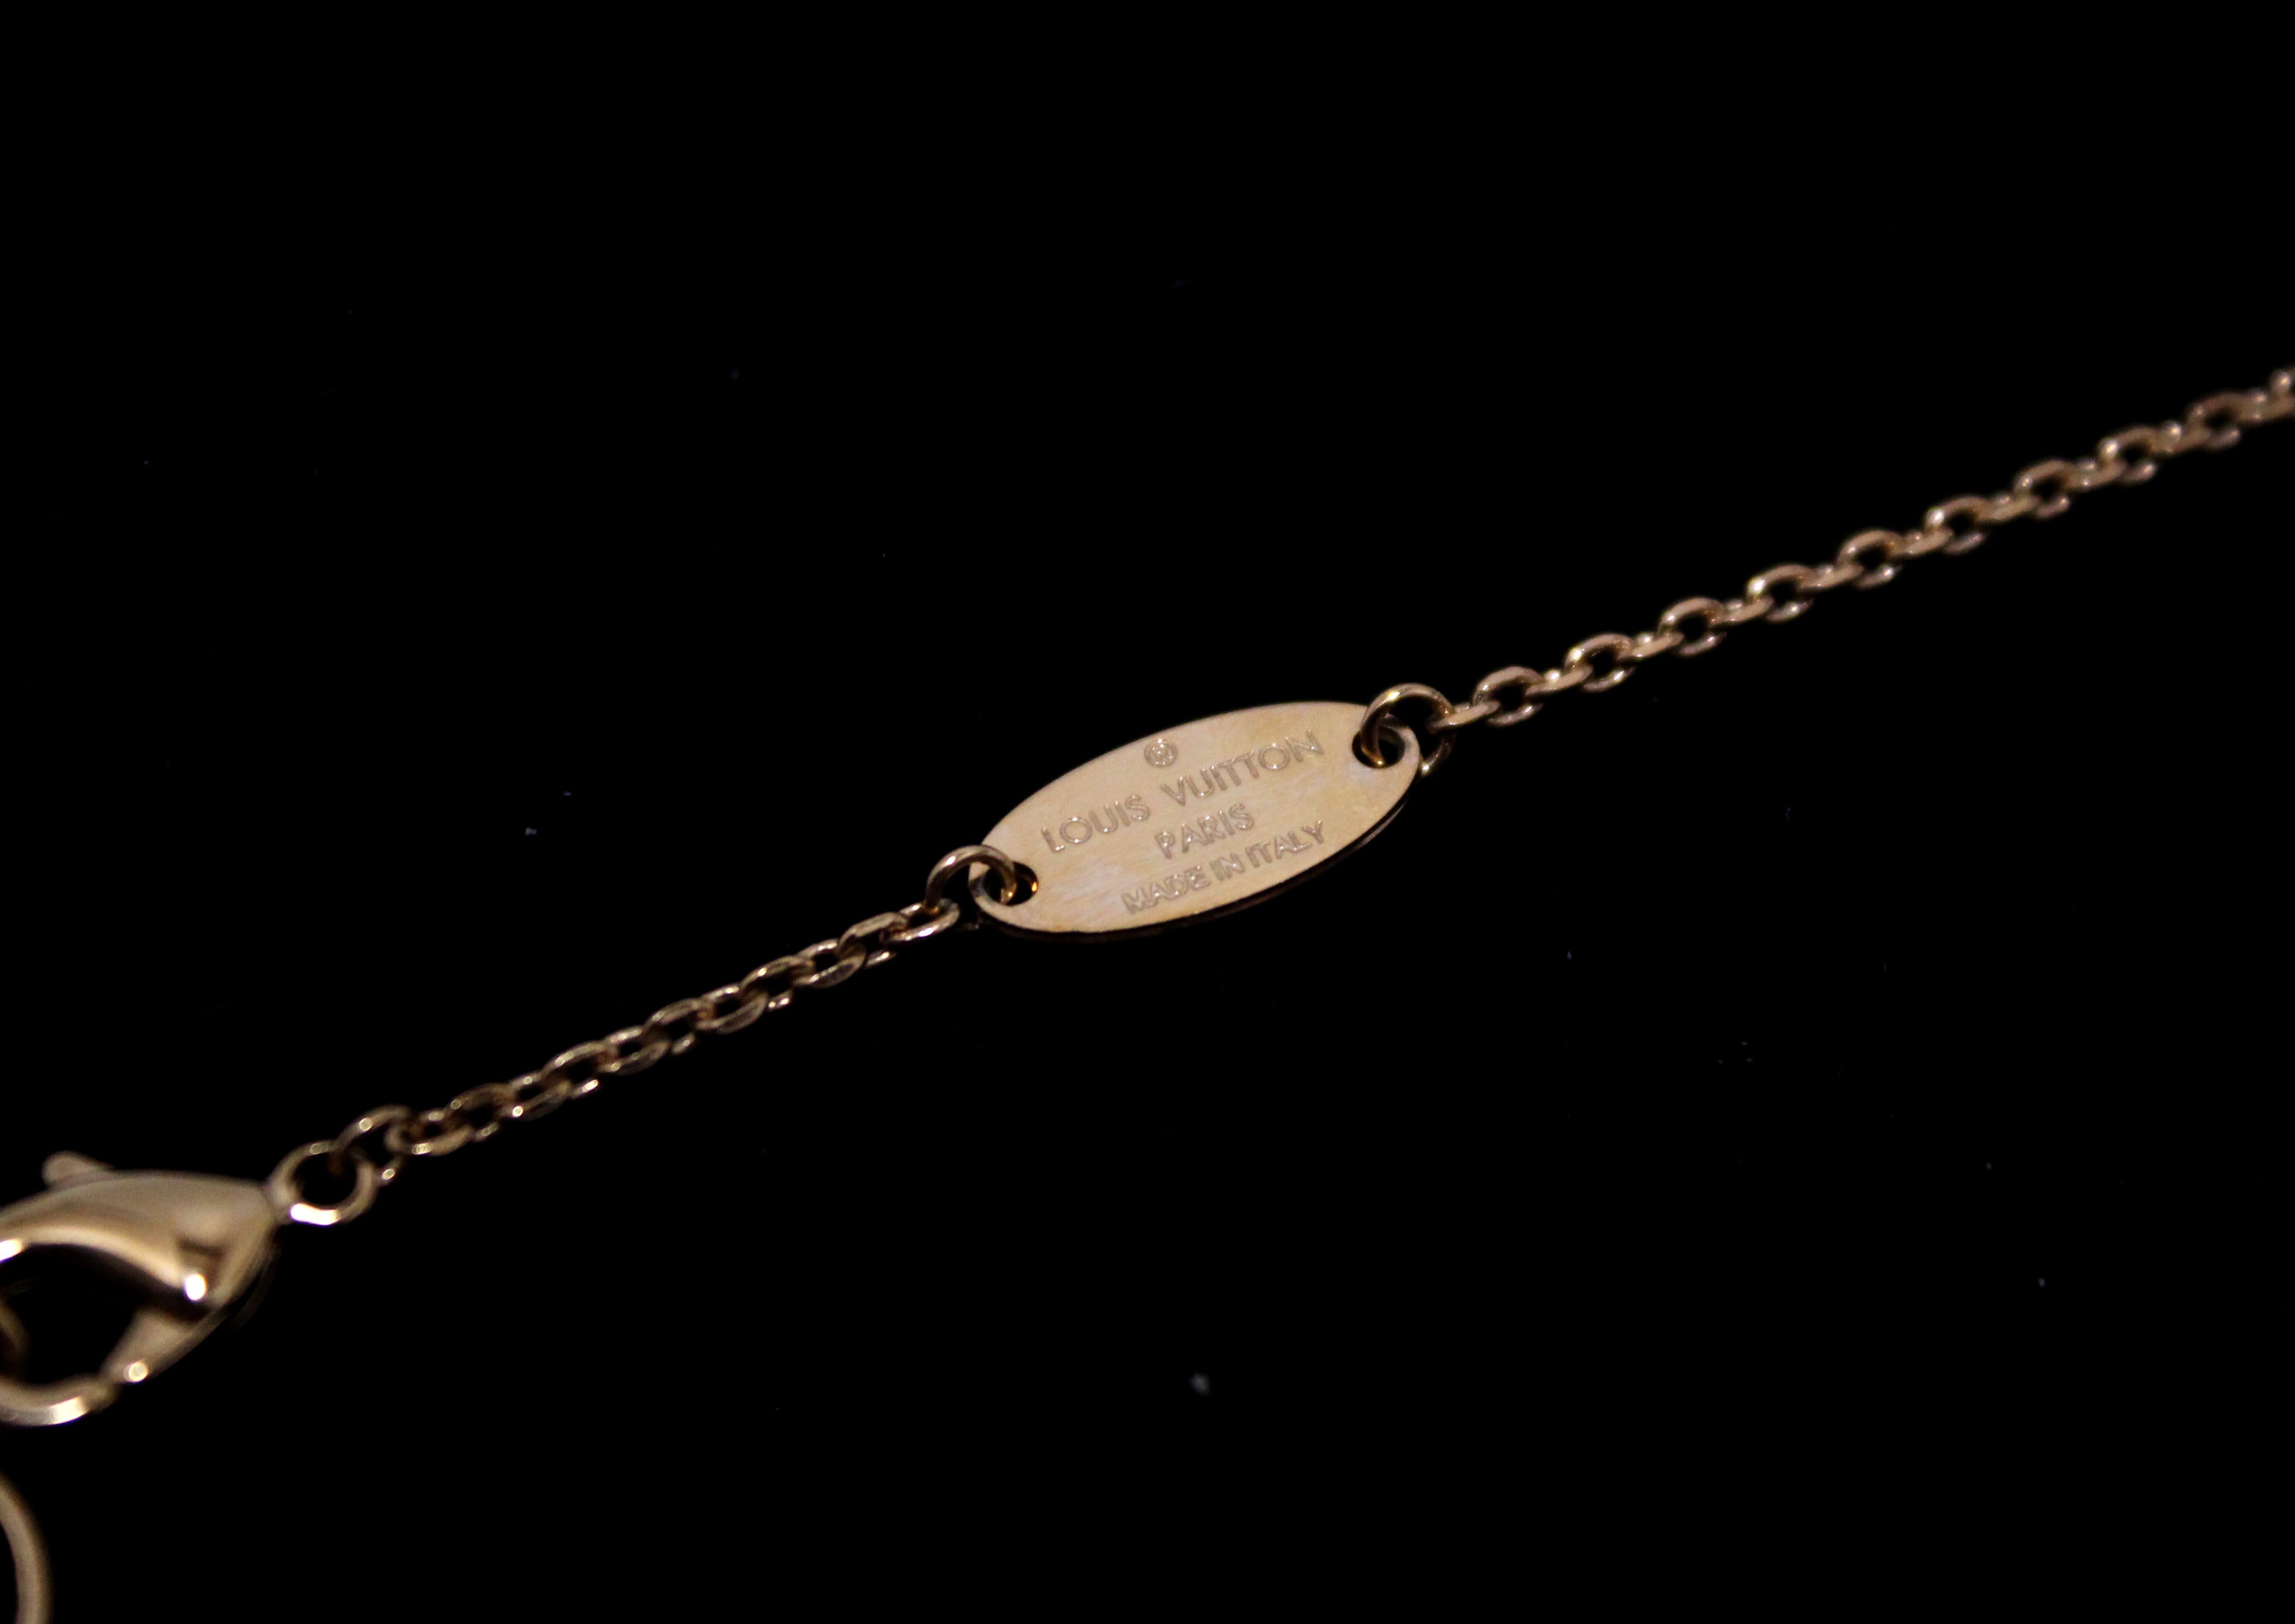 Louis Vuitton Vivienne Necklace Gold Metal